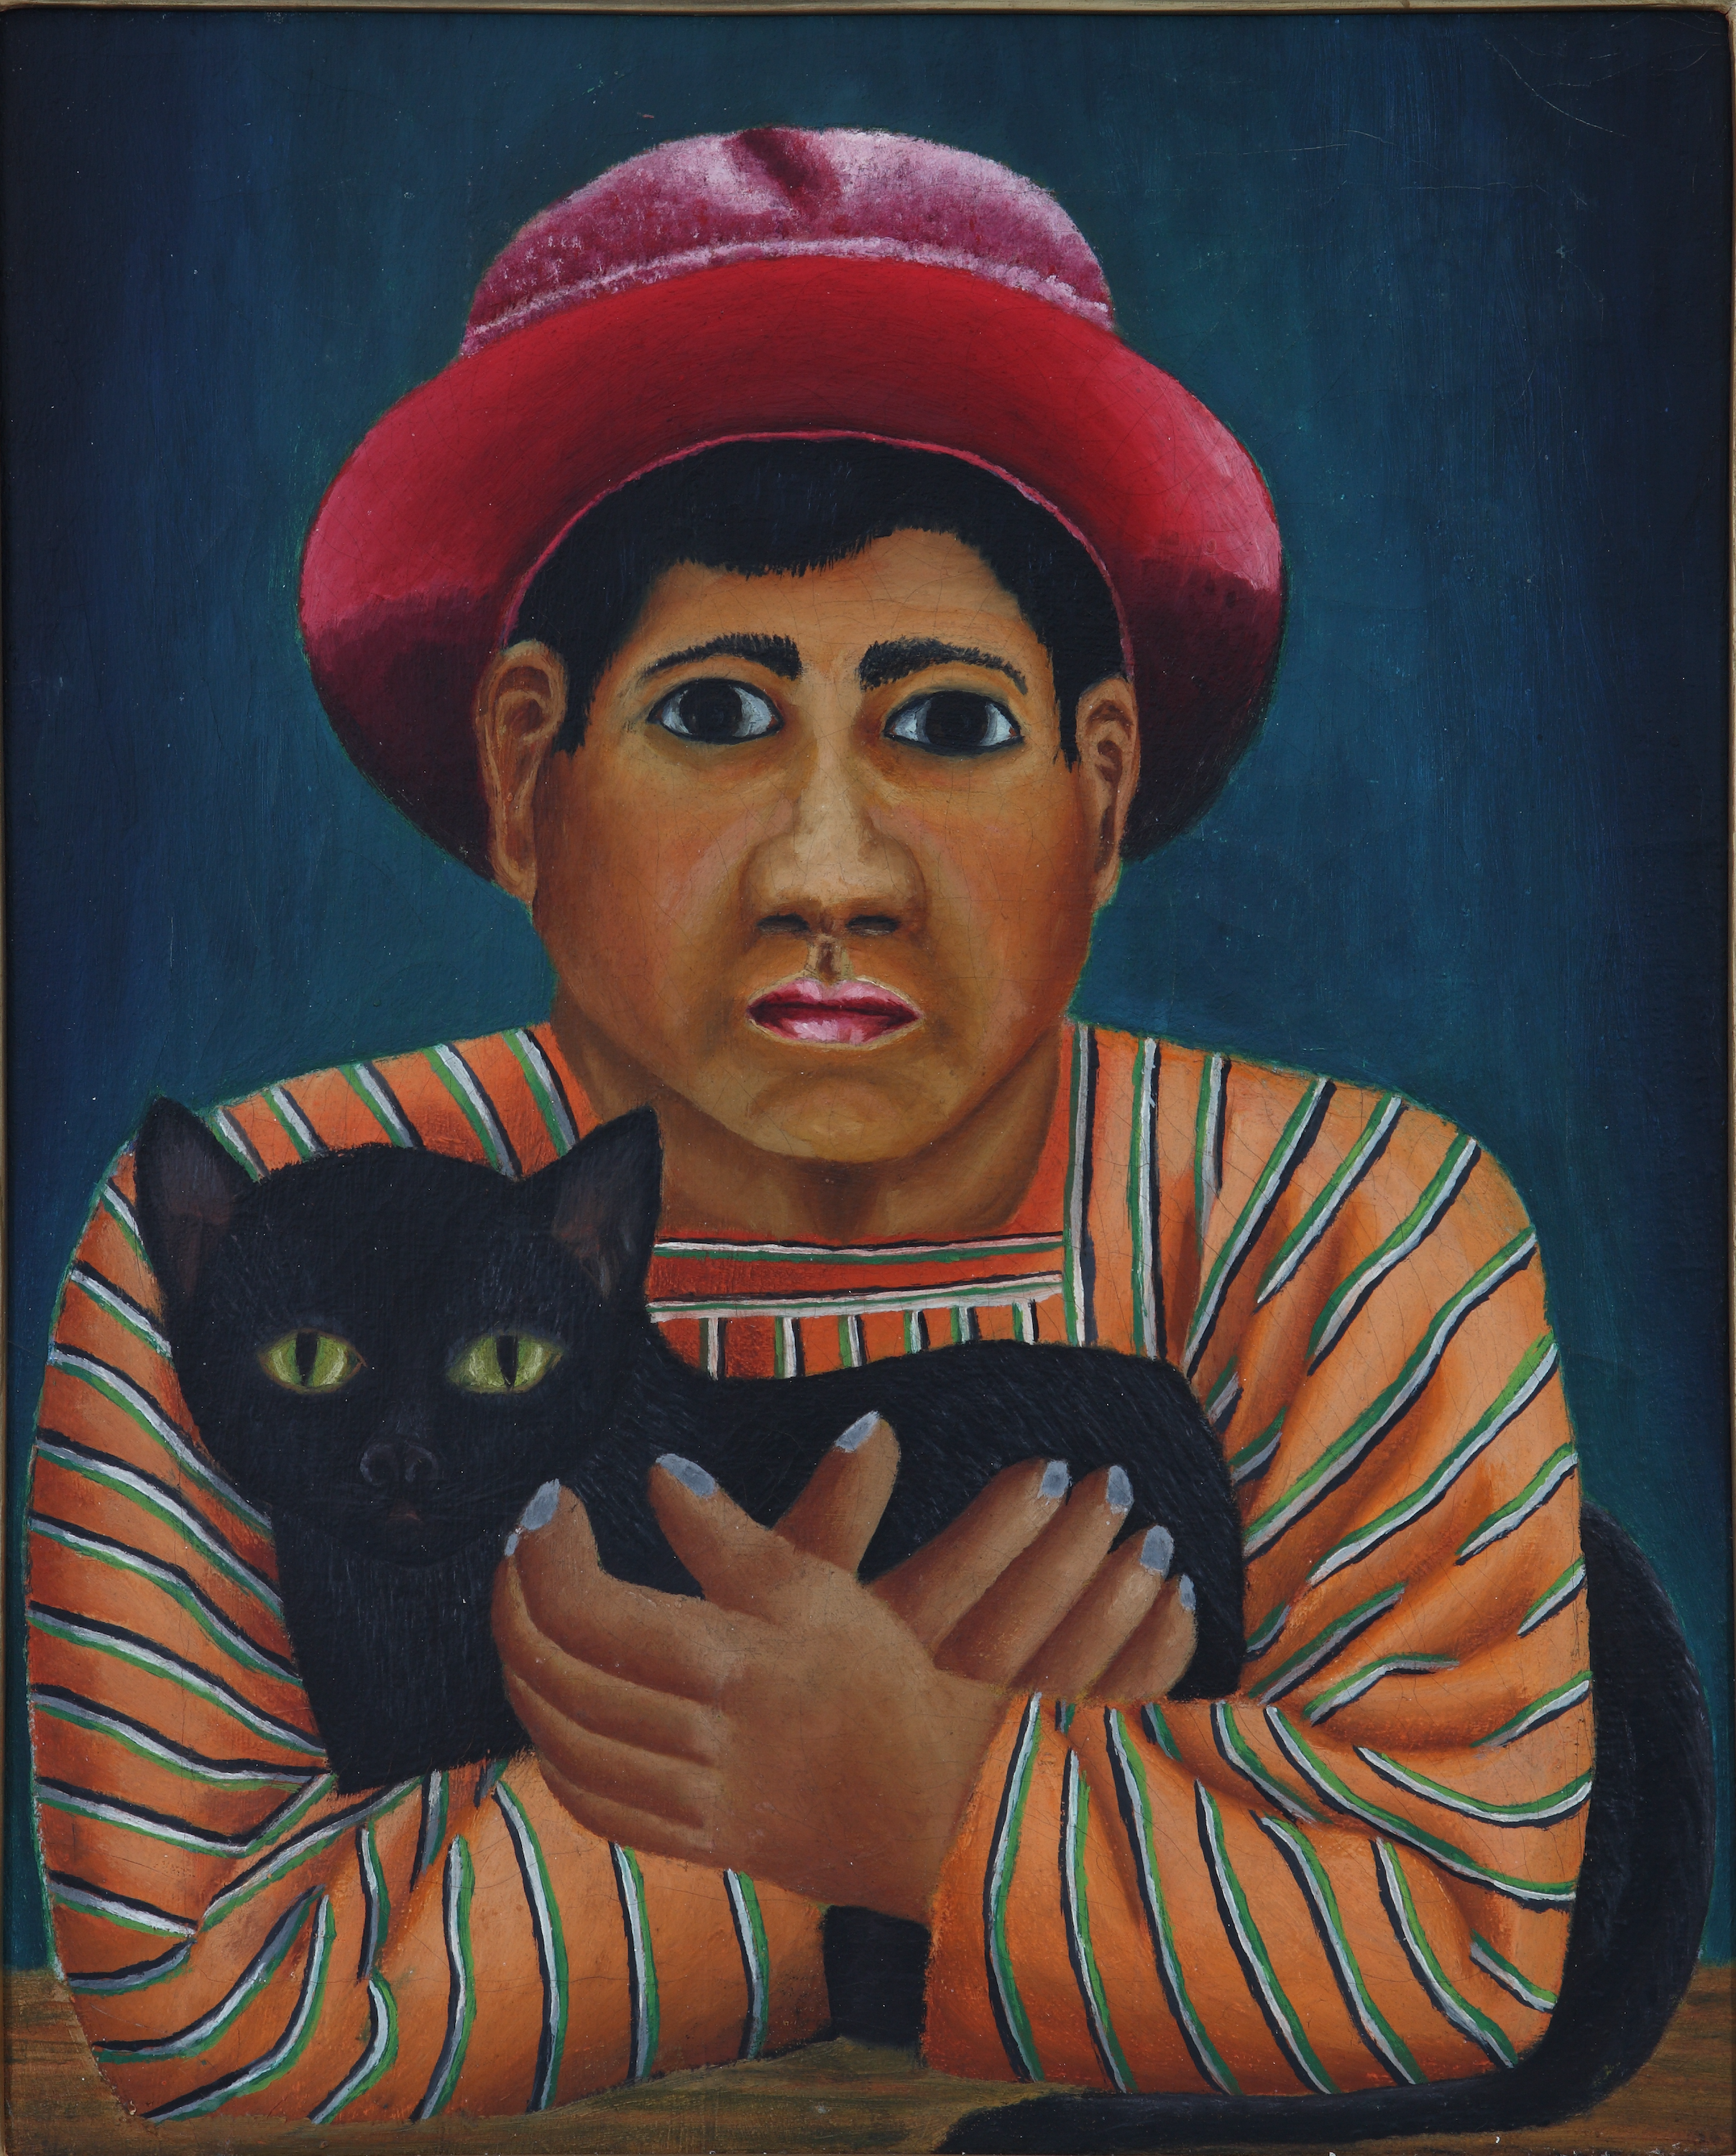 黒猫 by Fernando Castillo - 1929年頃 - 43.6 x 36 cm 